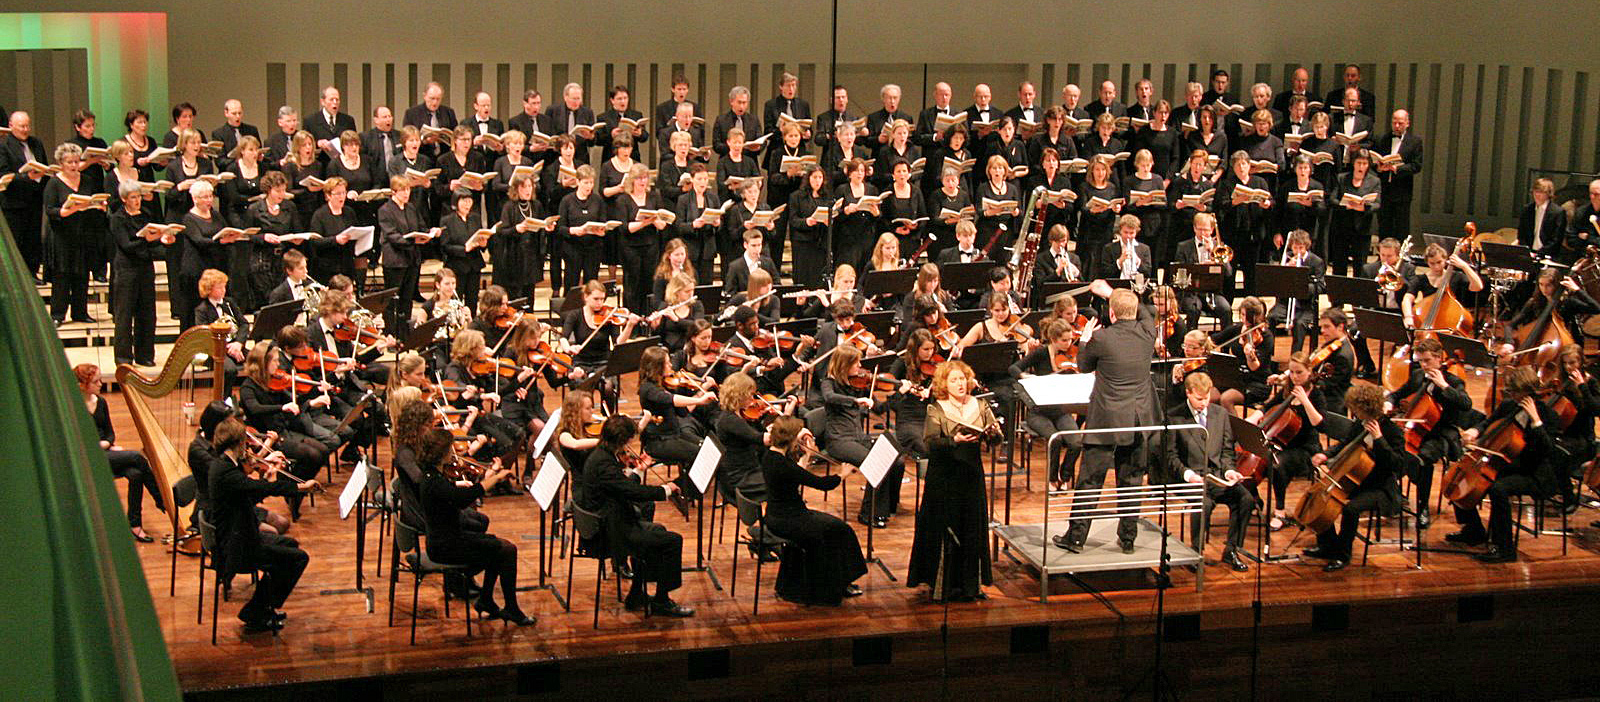 20090315-concert-tilburg-025